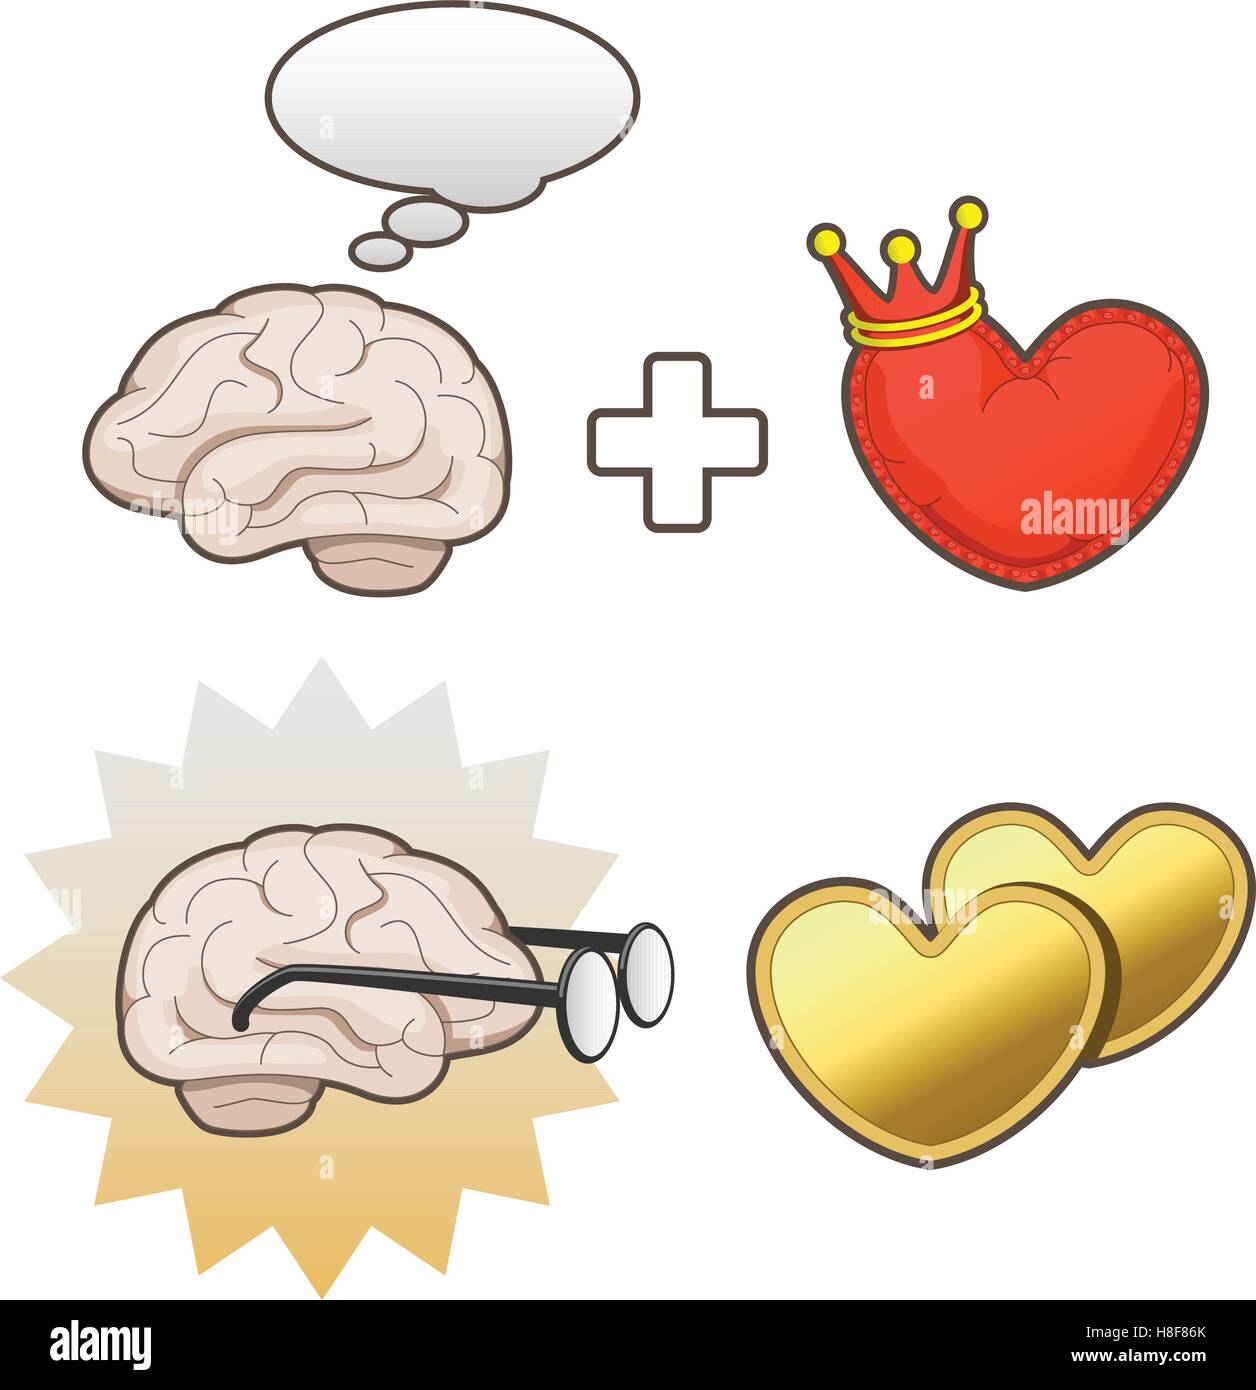 La pensée d'un cerveau en plus d'un roi de cœur et un cœur d'or et cerveau nerds Illustration de Vecteur